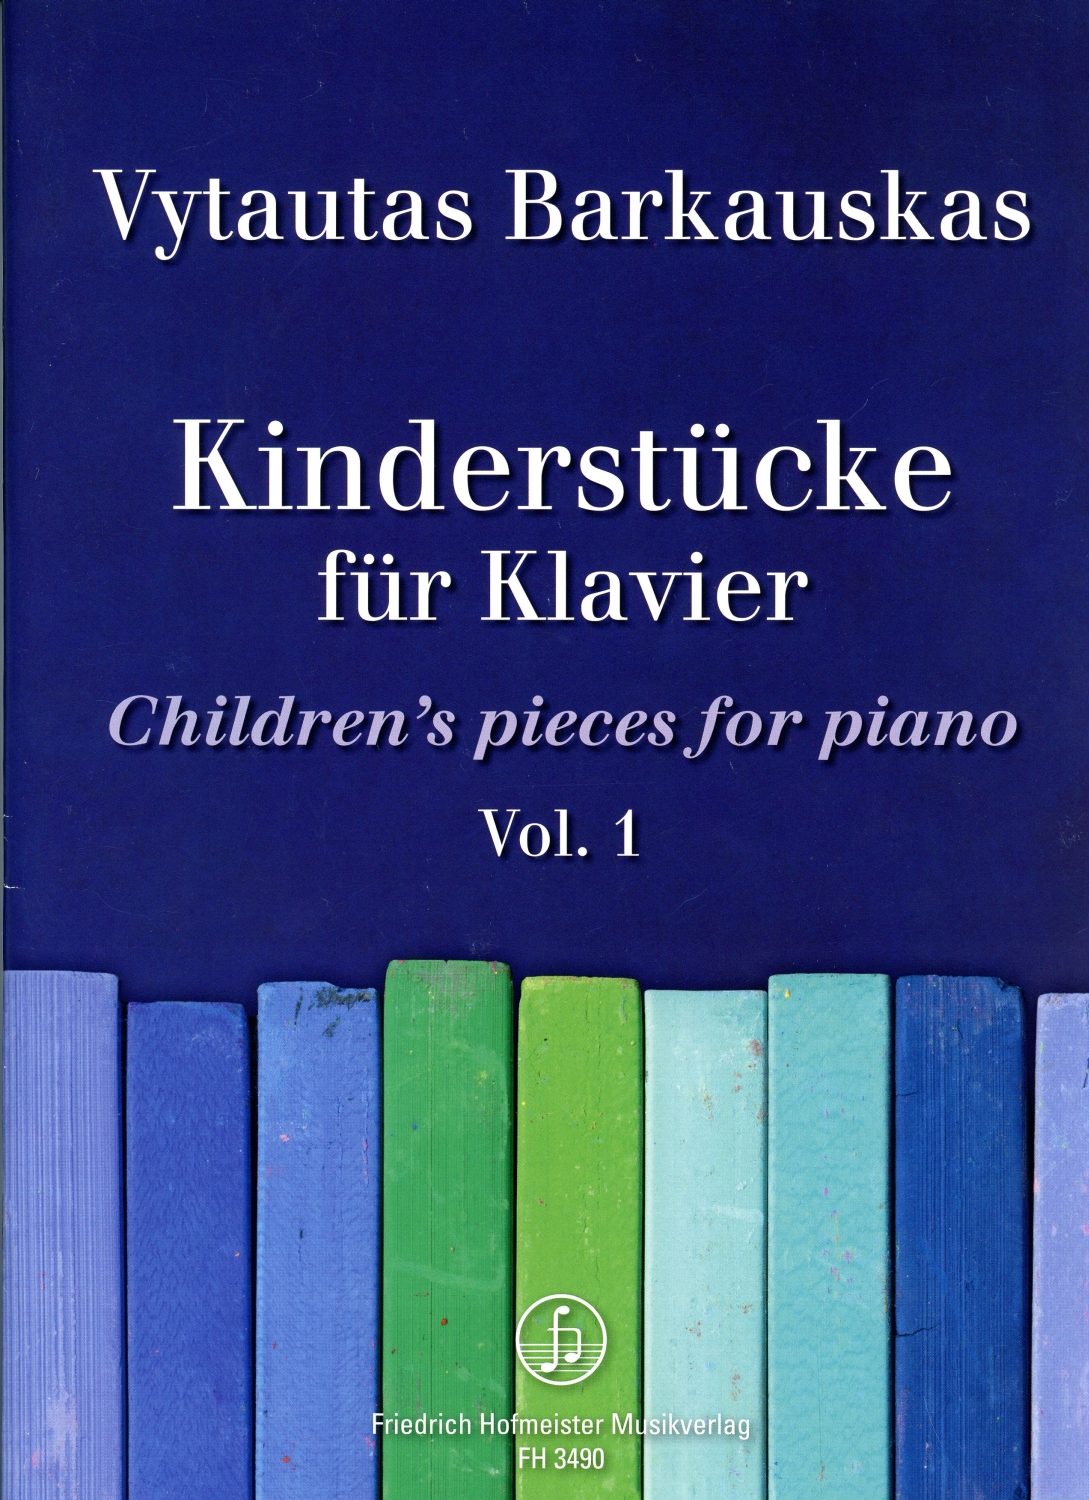 Vytautas-Barkauskas-Kinderstuecke-Vol-1-Pno-_0001.JPG